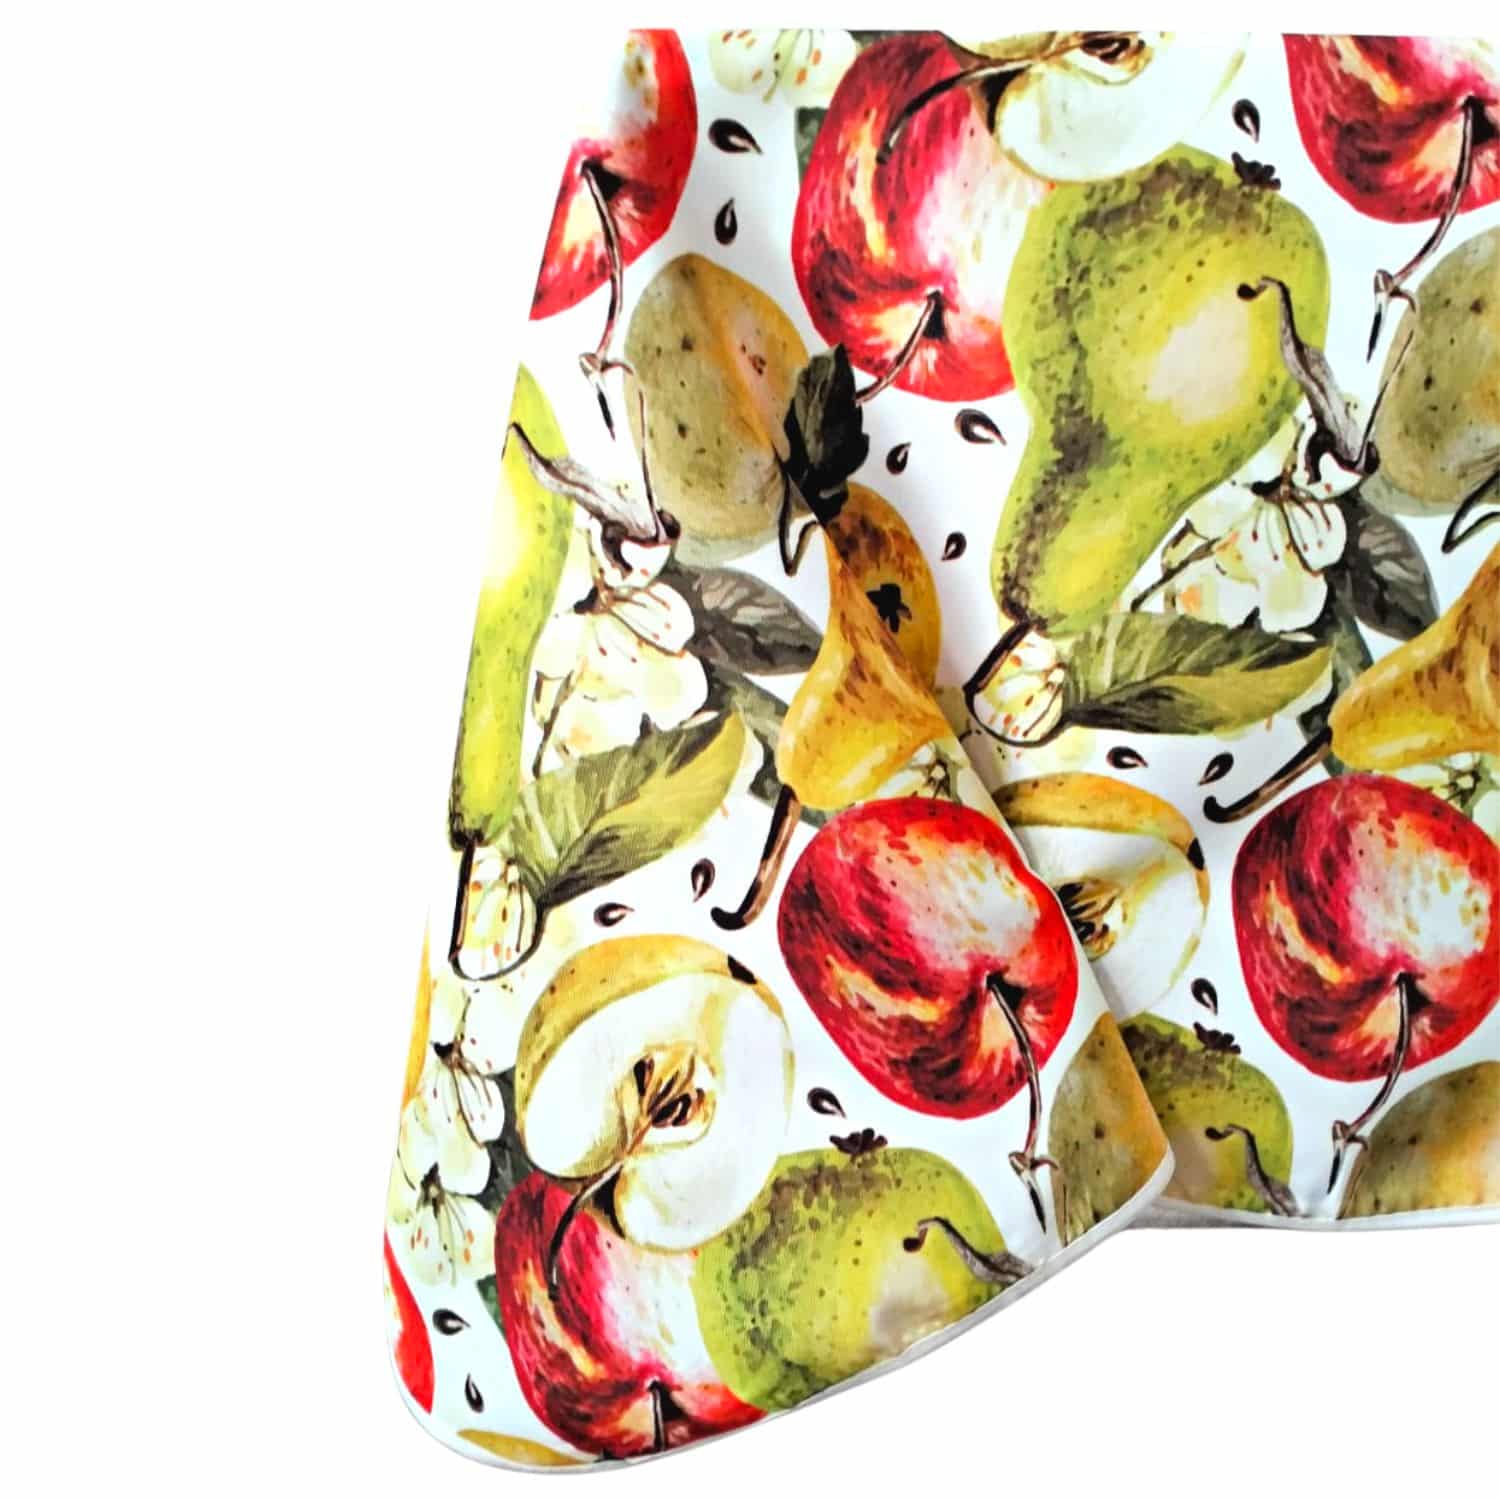 mele-e-pere-tovaglia-antimacchia-idrorepellente-multicolore-cucina-frutta-giallo-rosso-verde-autunnale-angolo